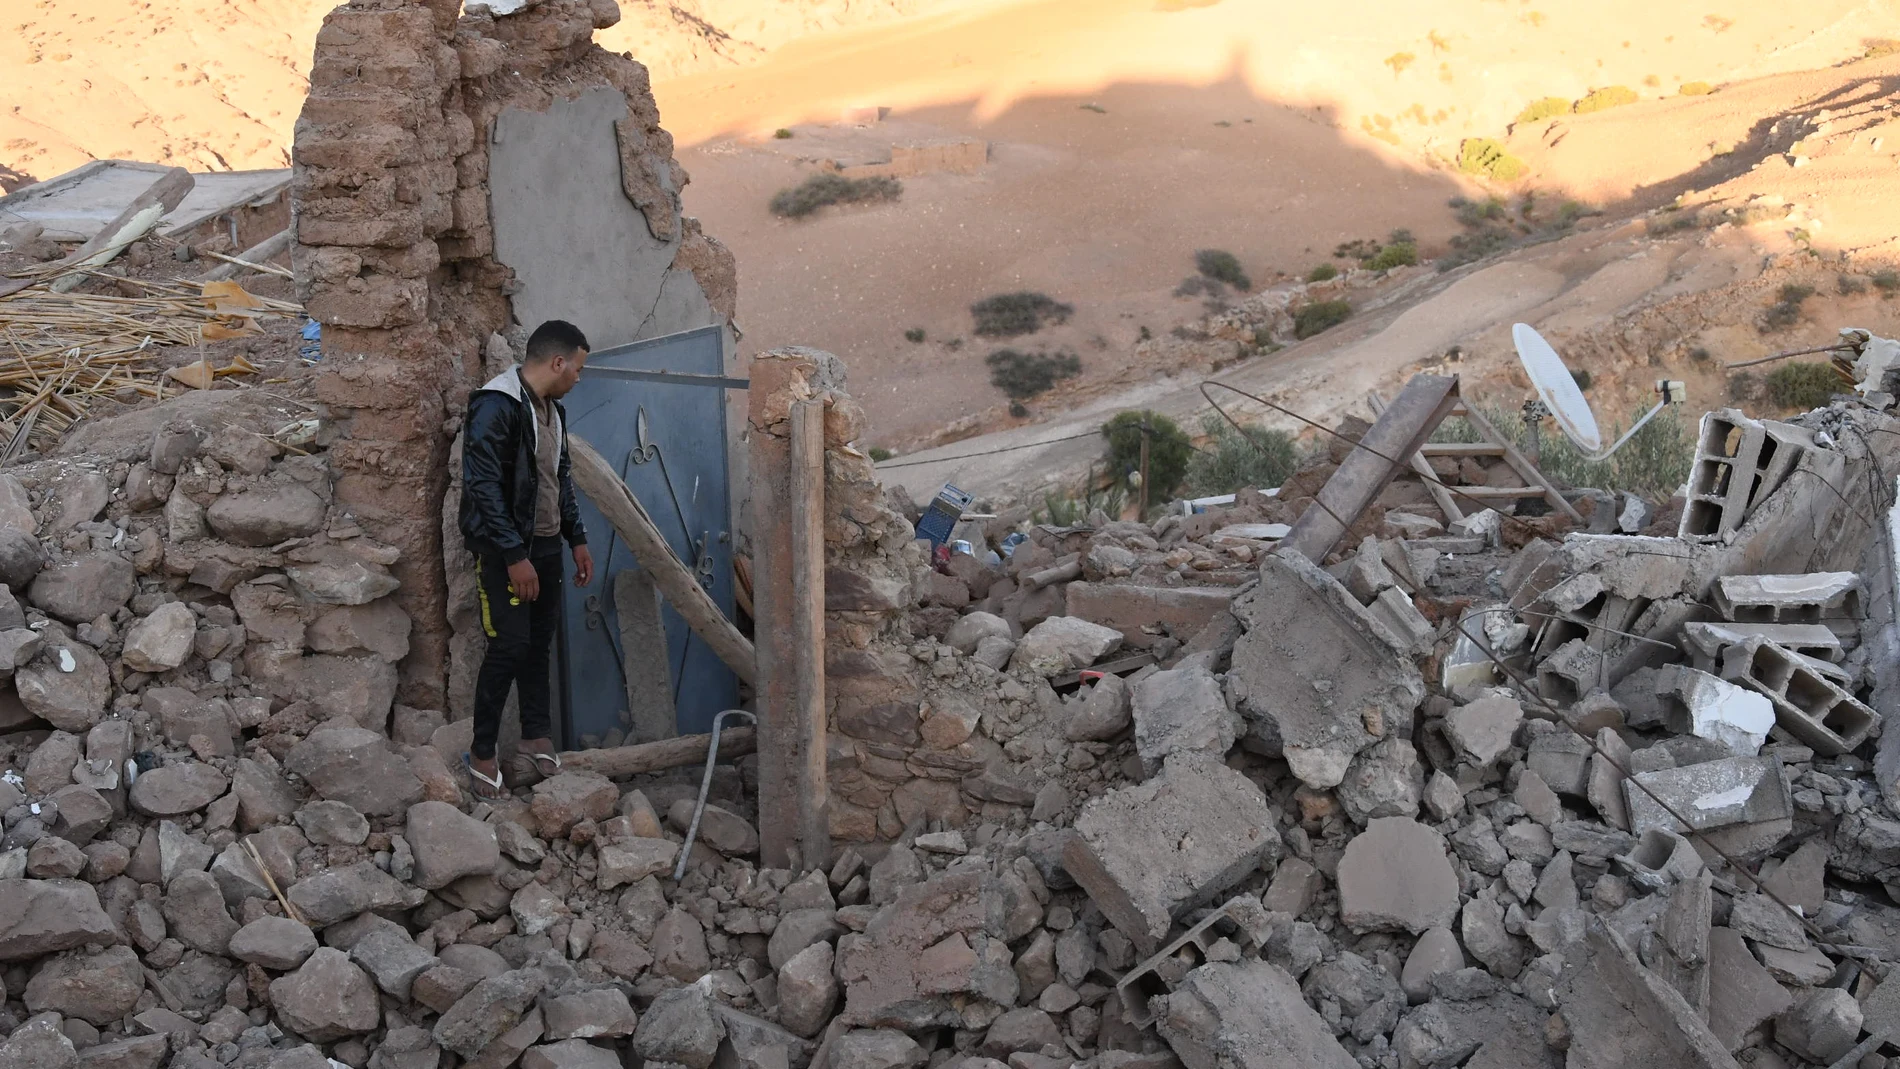 AMP.- Marruecos.- Francia asegura que Marruecos aún no ha solicitado ayuda internacional tras el terremoto